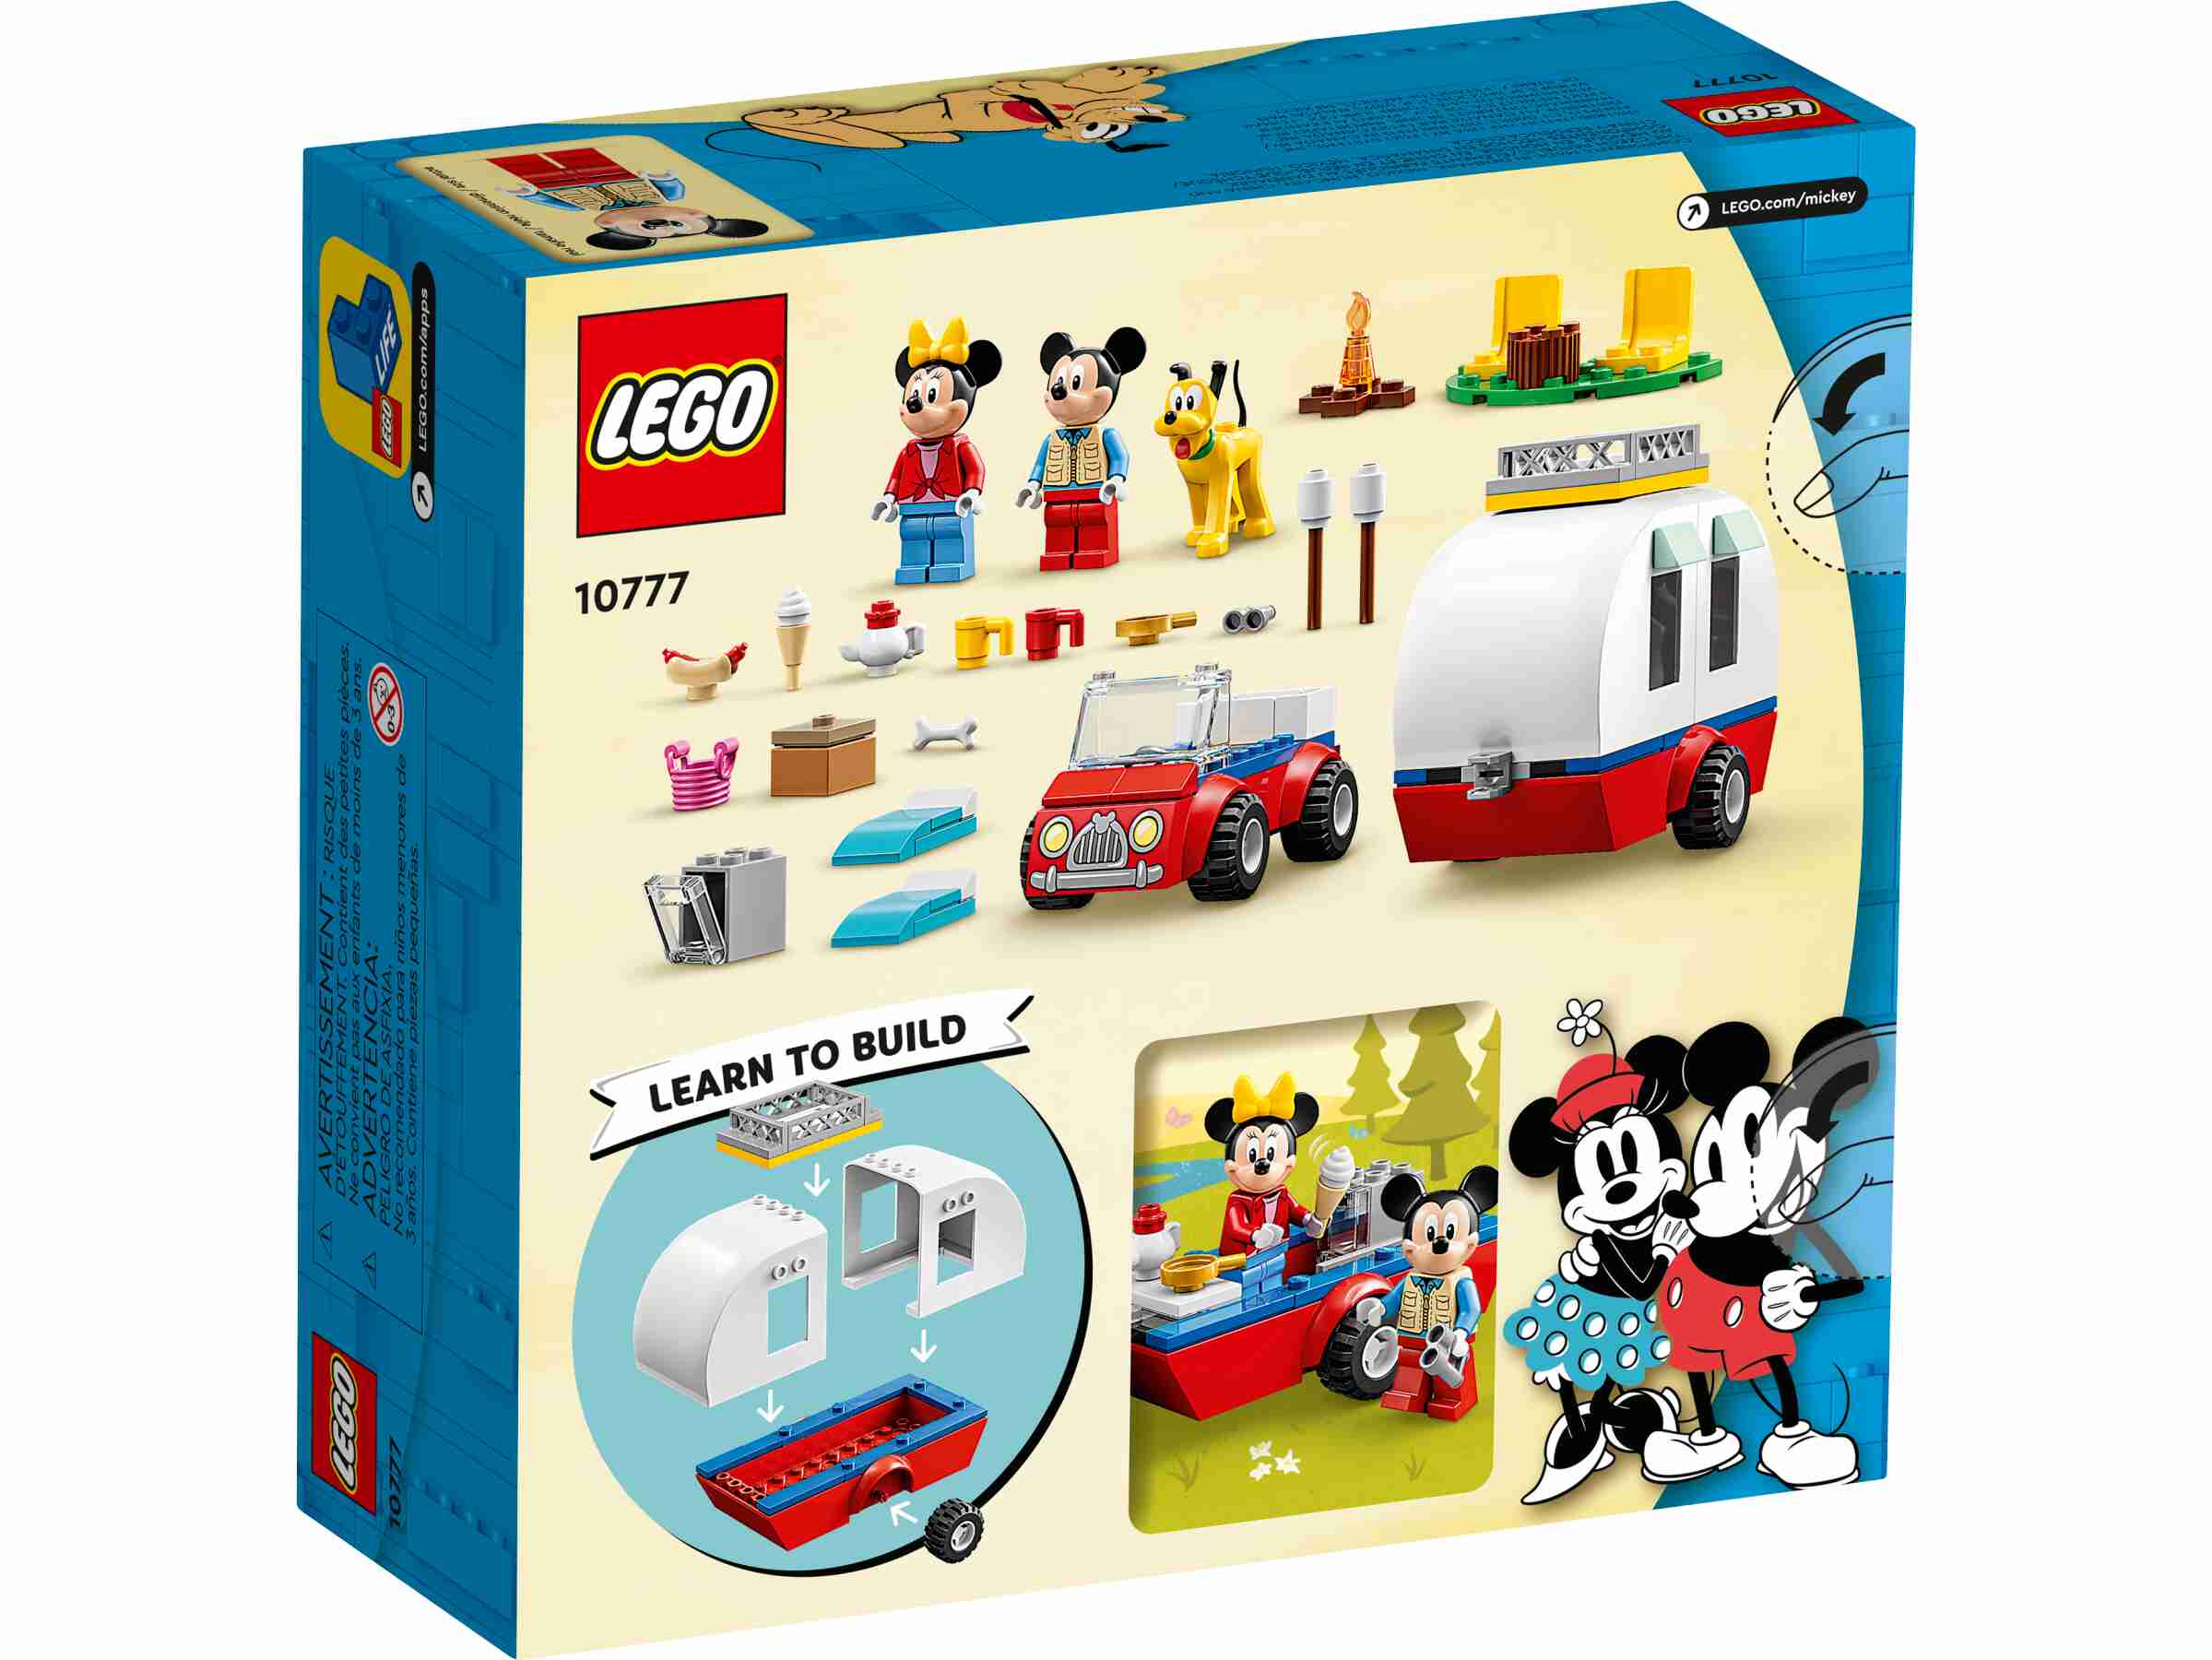 LEGO 10777 Disney Mickys und Minnies Campingausflug, Wohnmobil mit Minnie